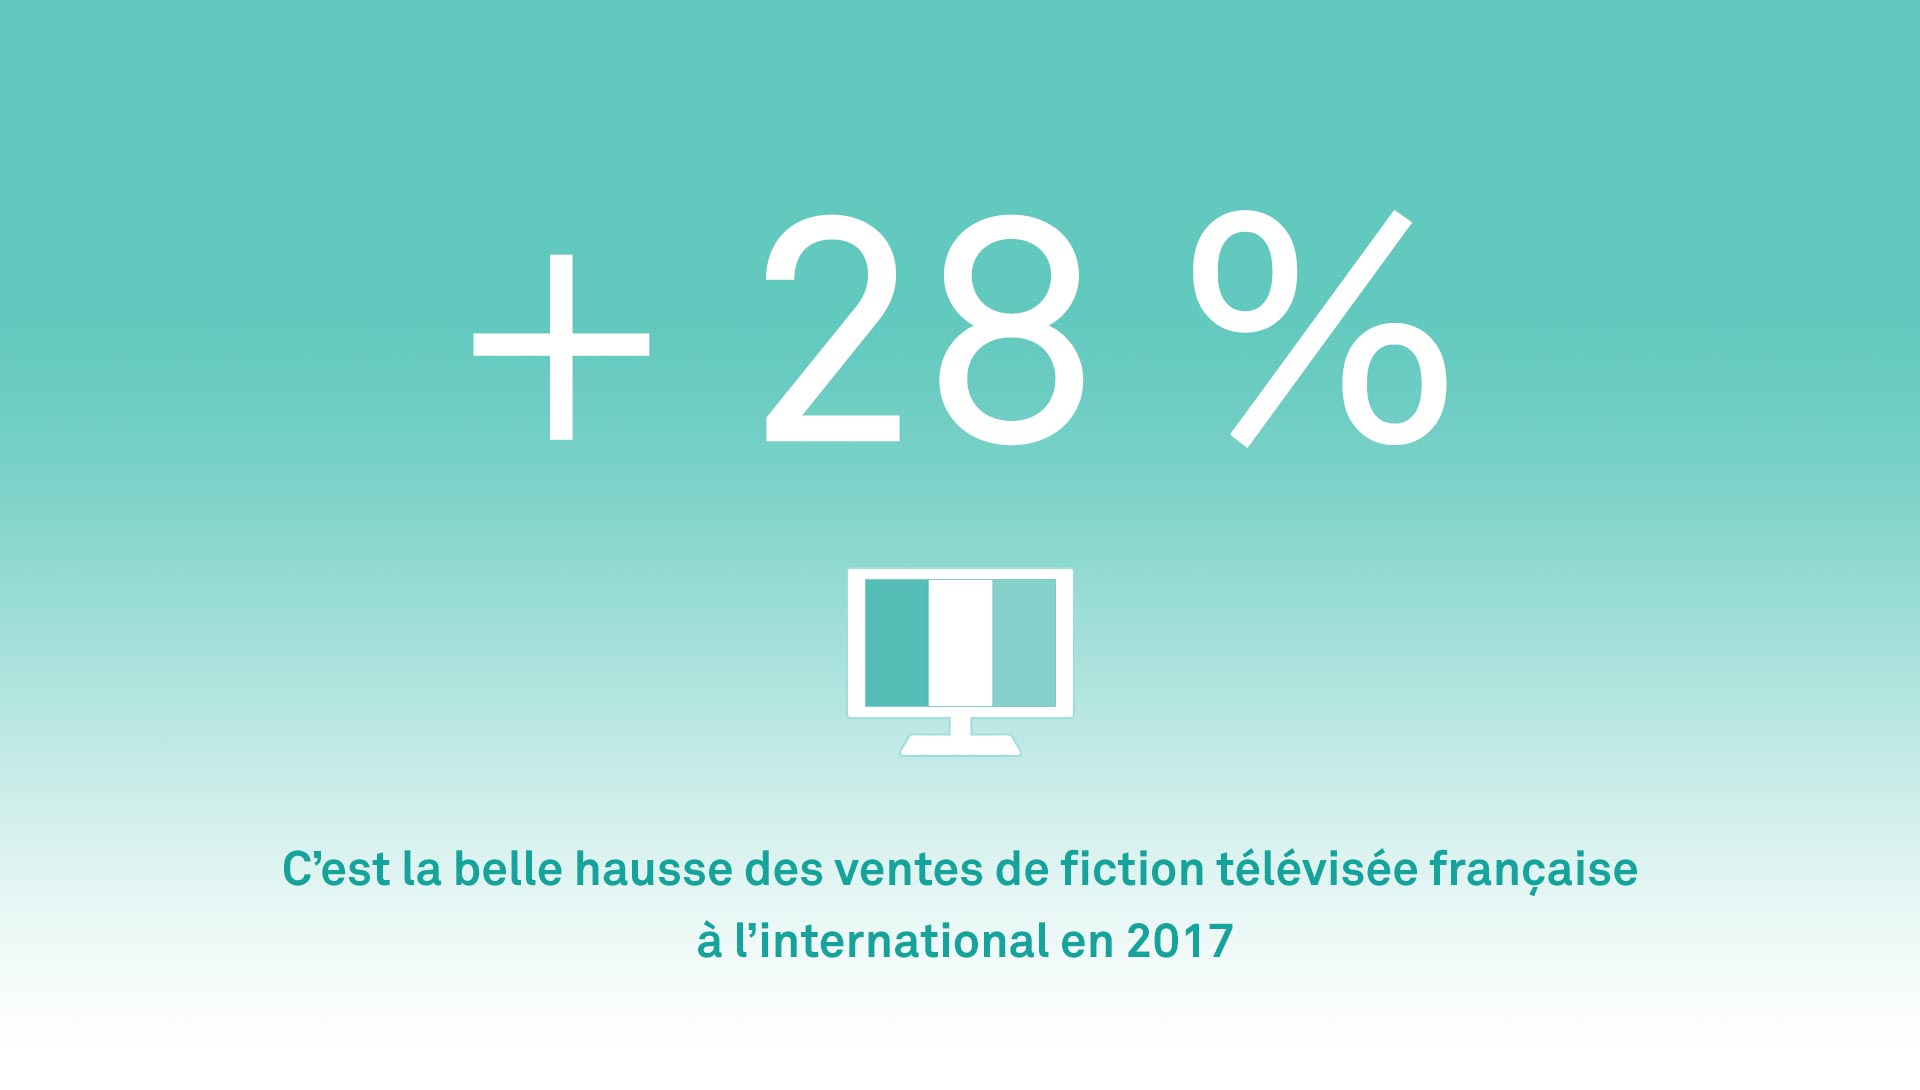 Export des fictions télévisées françaises à l'étranger en 2017